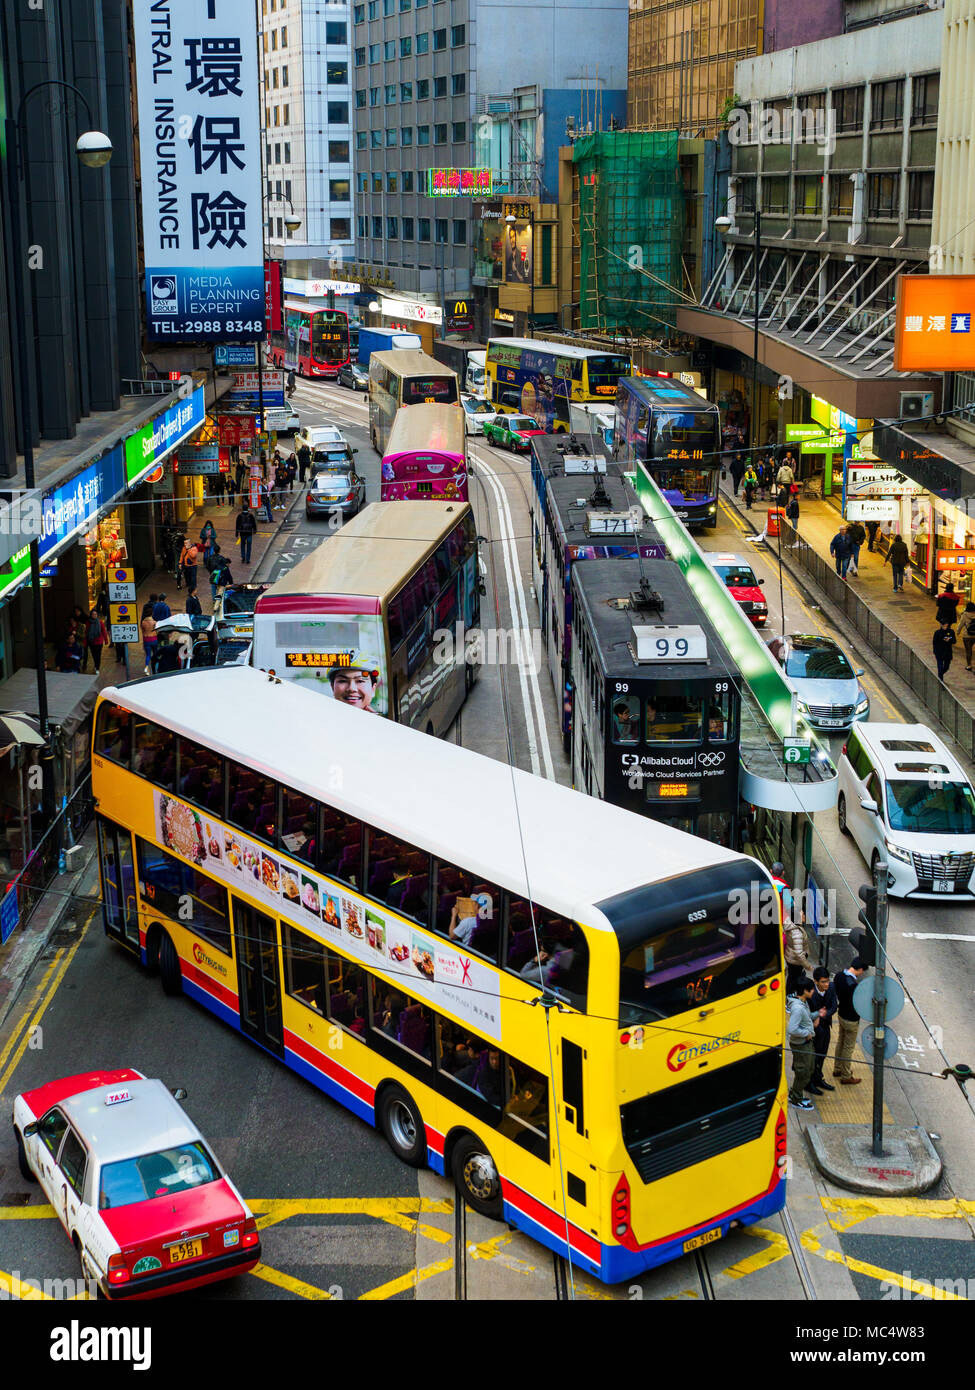 Verkehrsüberlastung in Hongkong - Busse Straßenbahnen und Taxis mischen sich im Zentrum Hongkongs. Stockfoto